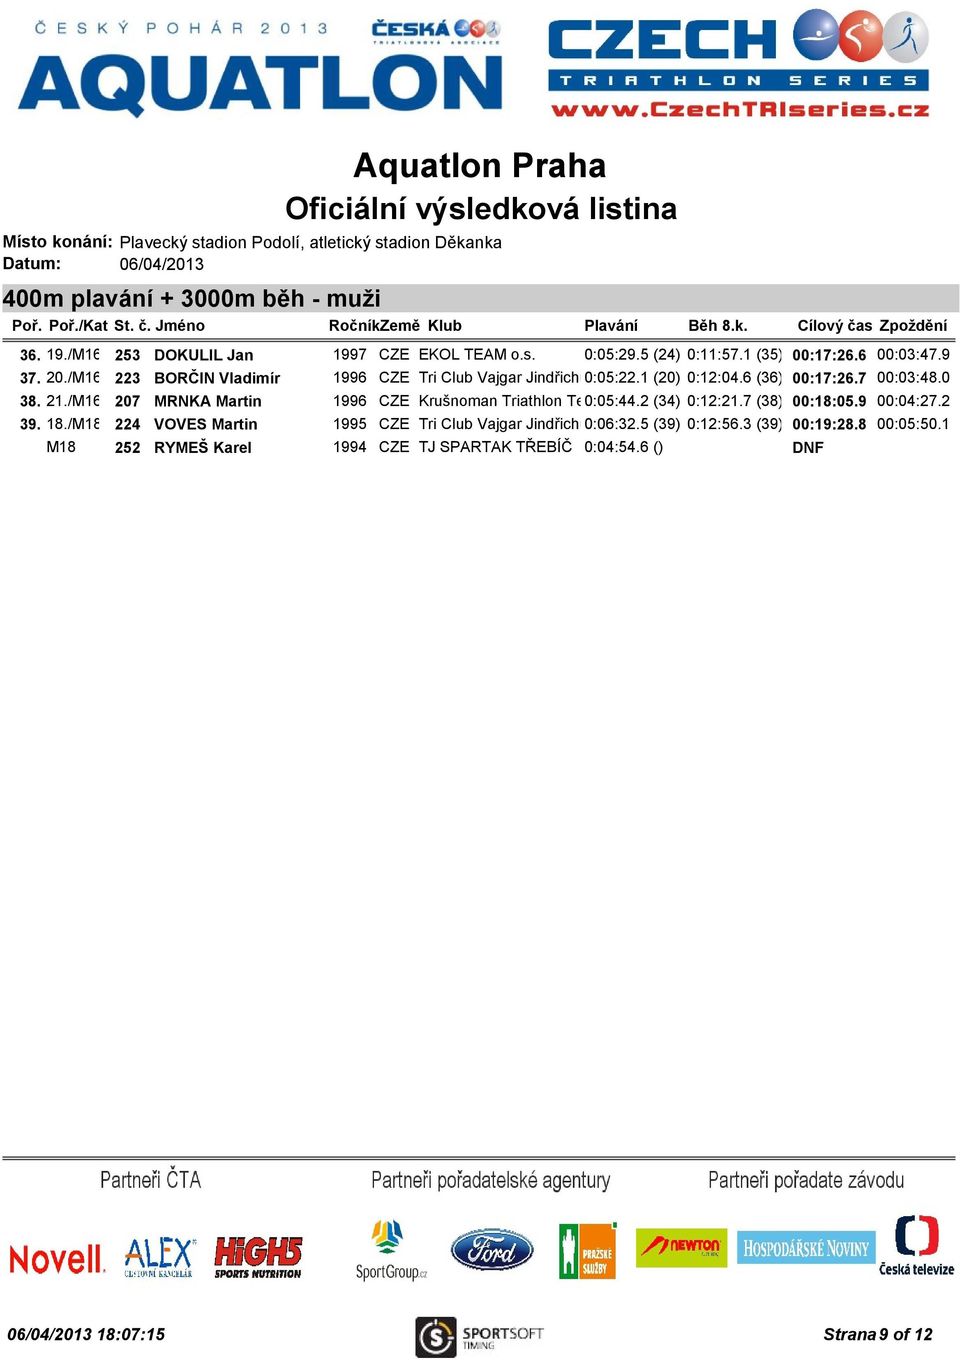 /M16 207 MRNKA Martin 1996 CZE Krušnoman Triathlon Team 0:05:44.2 Litvínov (34) 0:12:21.7 (38) 00:18:05.9 00:04:27.2 39. 18.